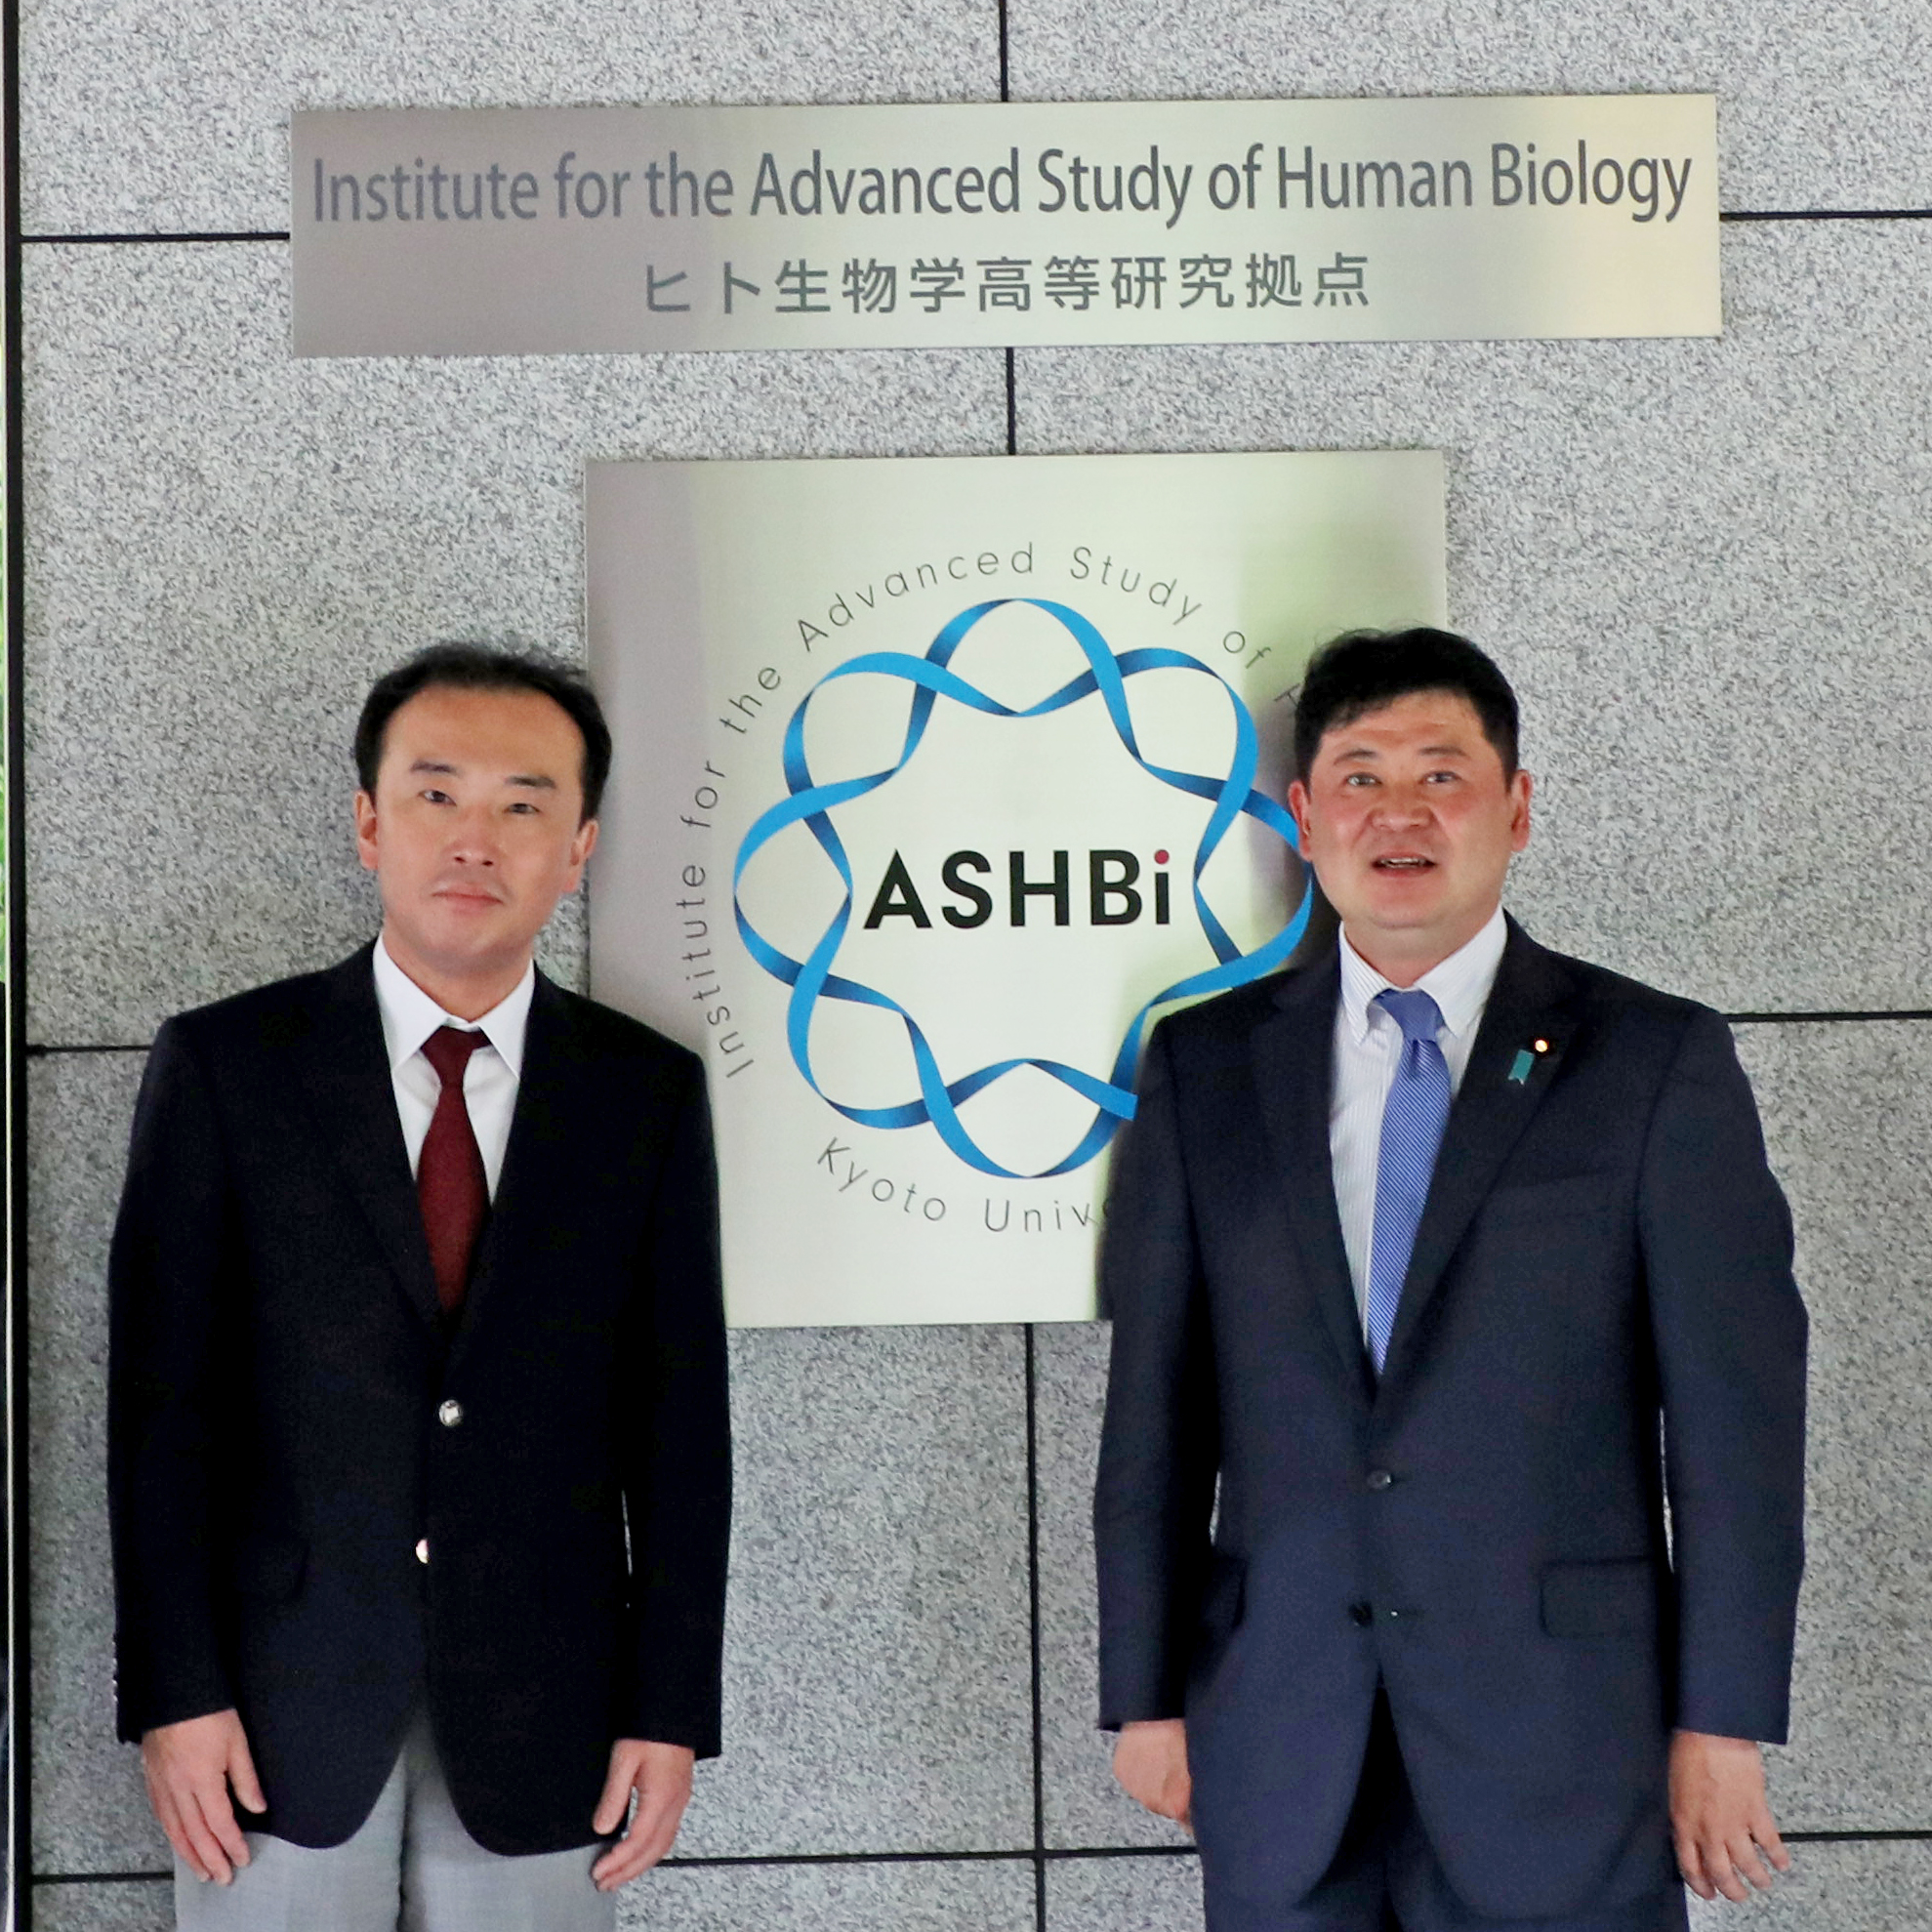 田中英之 文部科学副大臣がASHBiを訪問しました